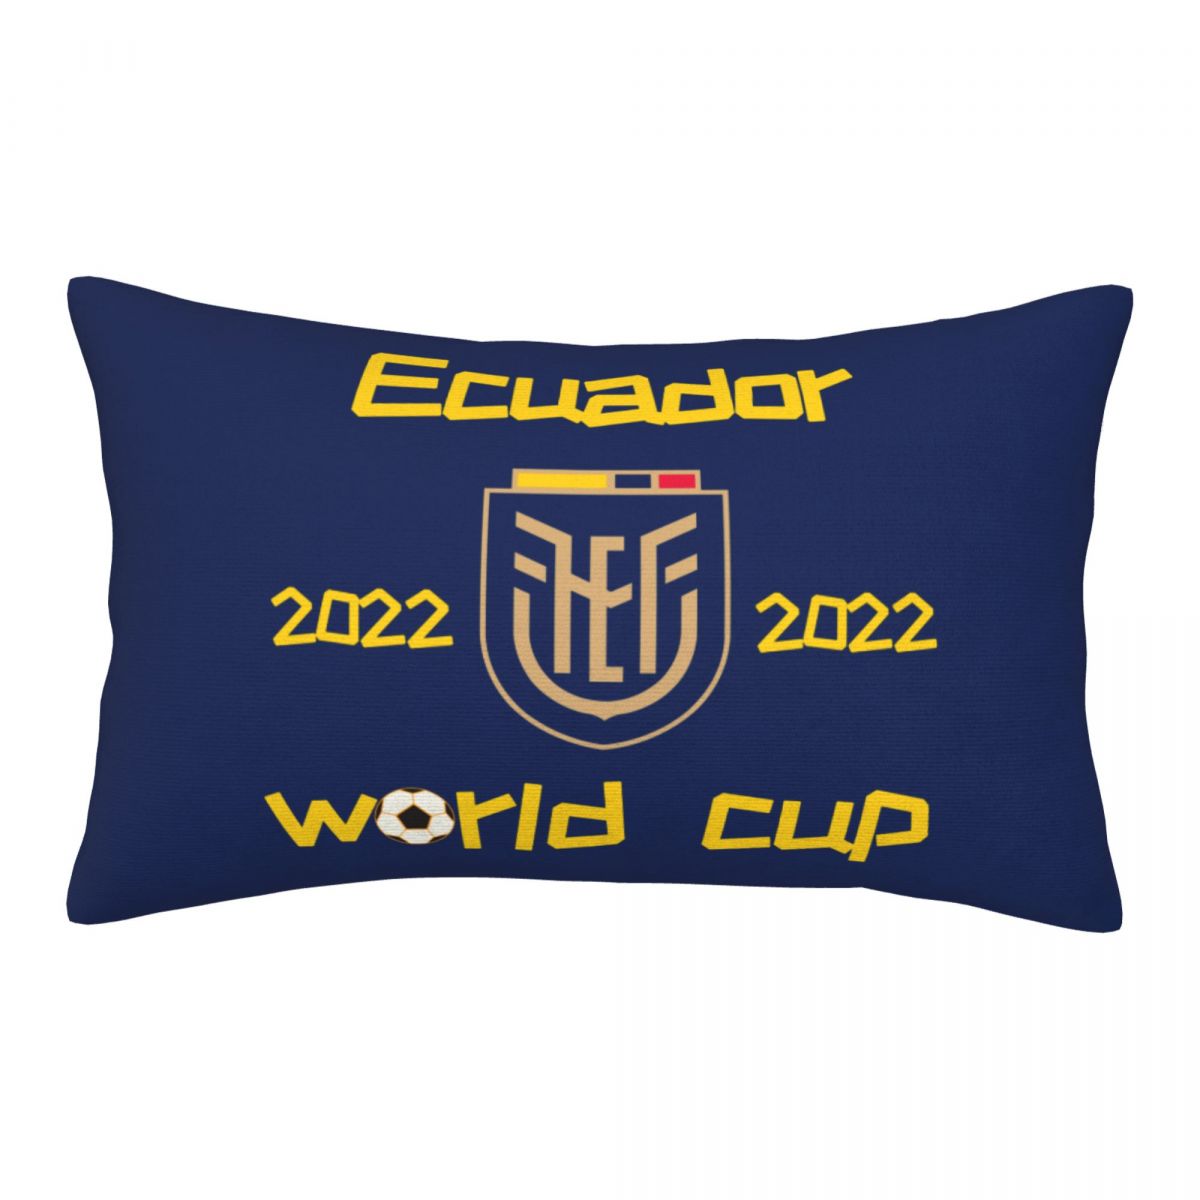 Ecuador 2022 World Cup Team Logo Pillowcase